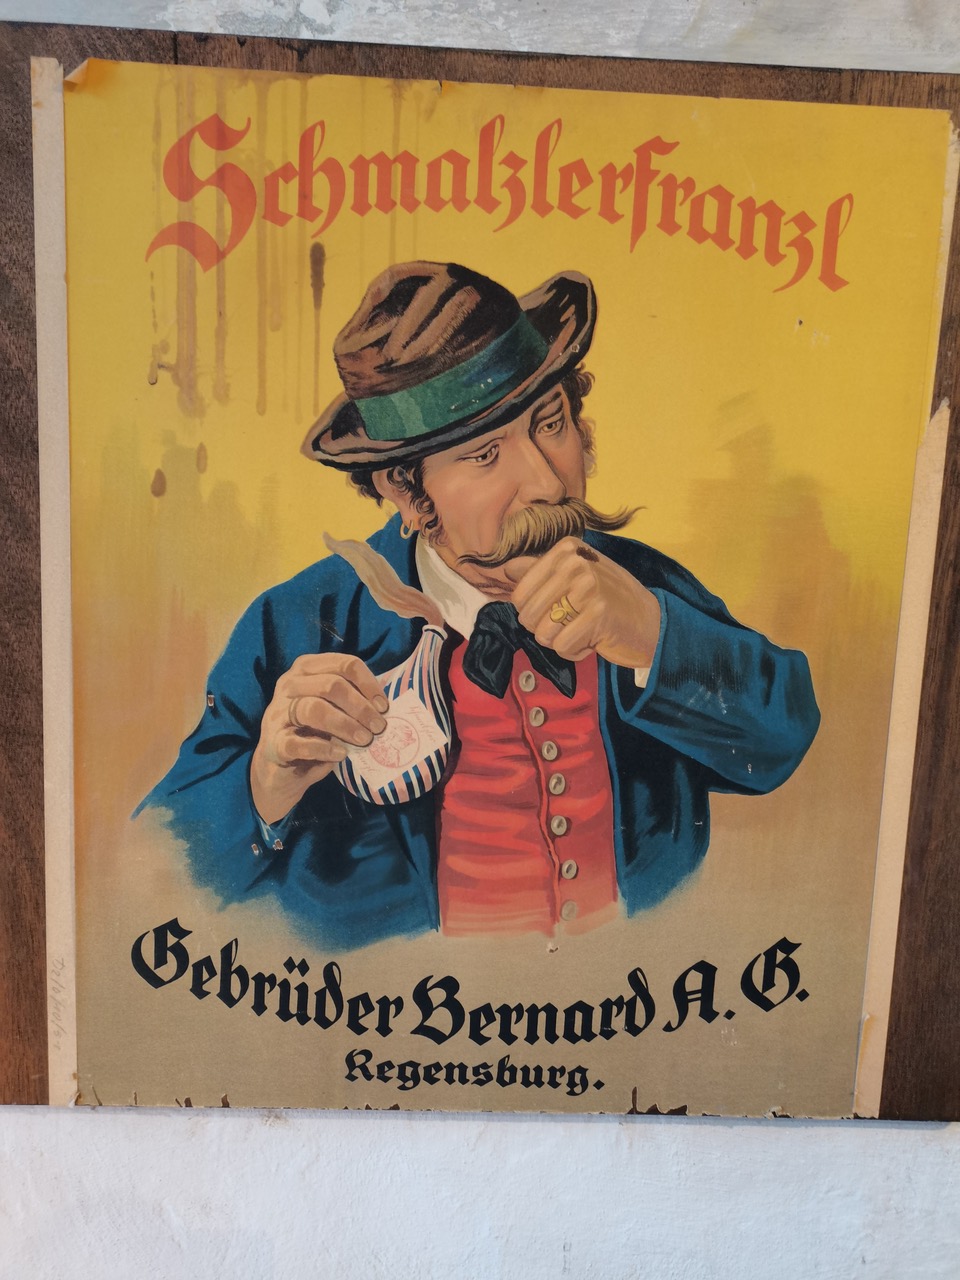 Ein Schnupftabak-Werbeplakat „SchmalzlerFranzl“, auf dem ein Mann mit Schnauzbart, Hut und Janker zu sehen ist, der den Tabak schnupft; darunter der Schriftzug „Gebrüder Bernard A.G. Regensburg“